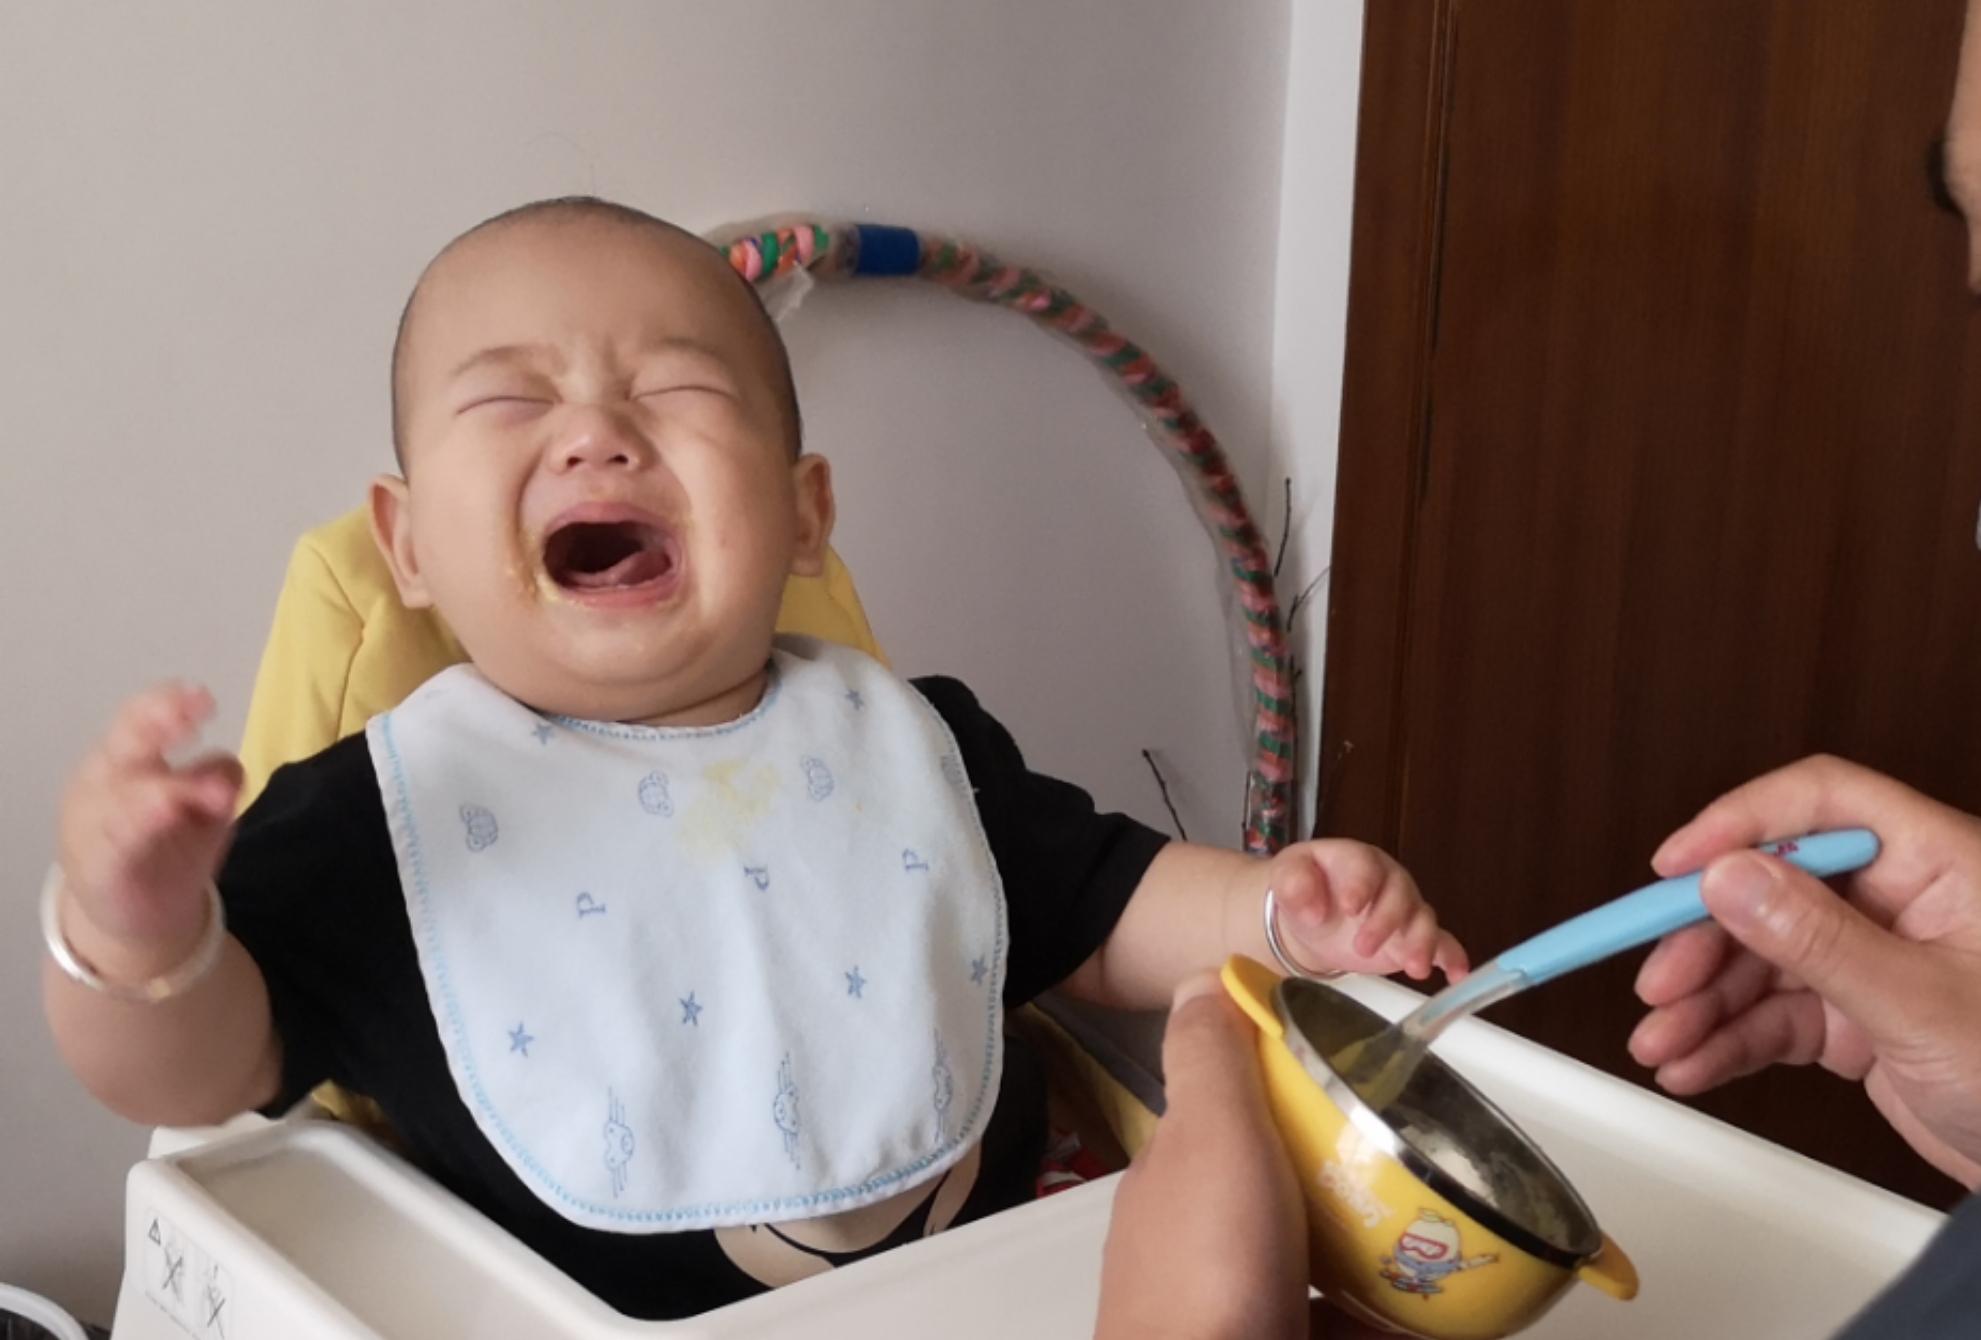 八个月婴儿可以吃什么辅食（8月龄宝宝）-幼儿百科-魔术铺